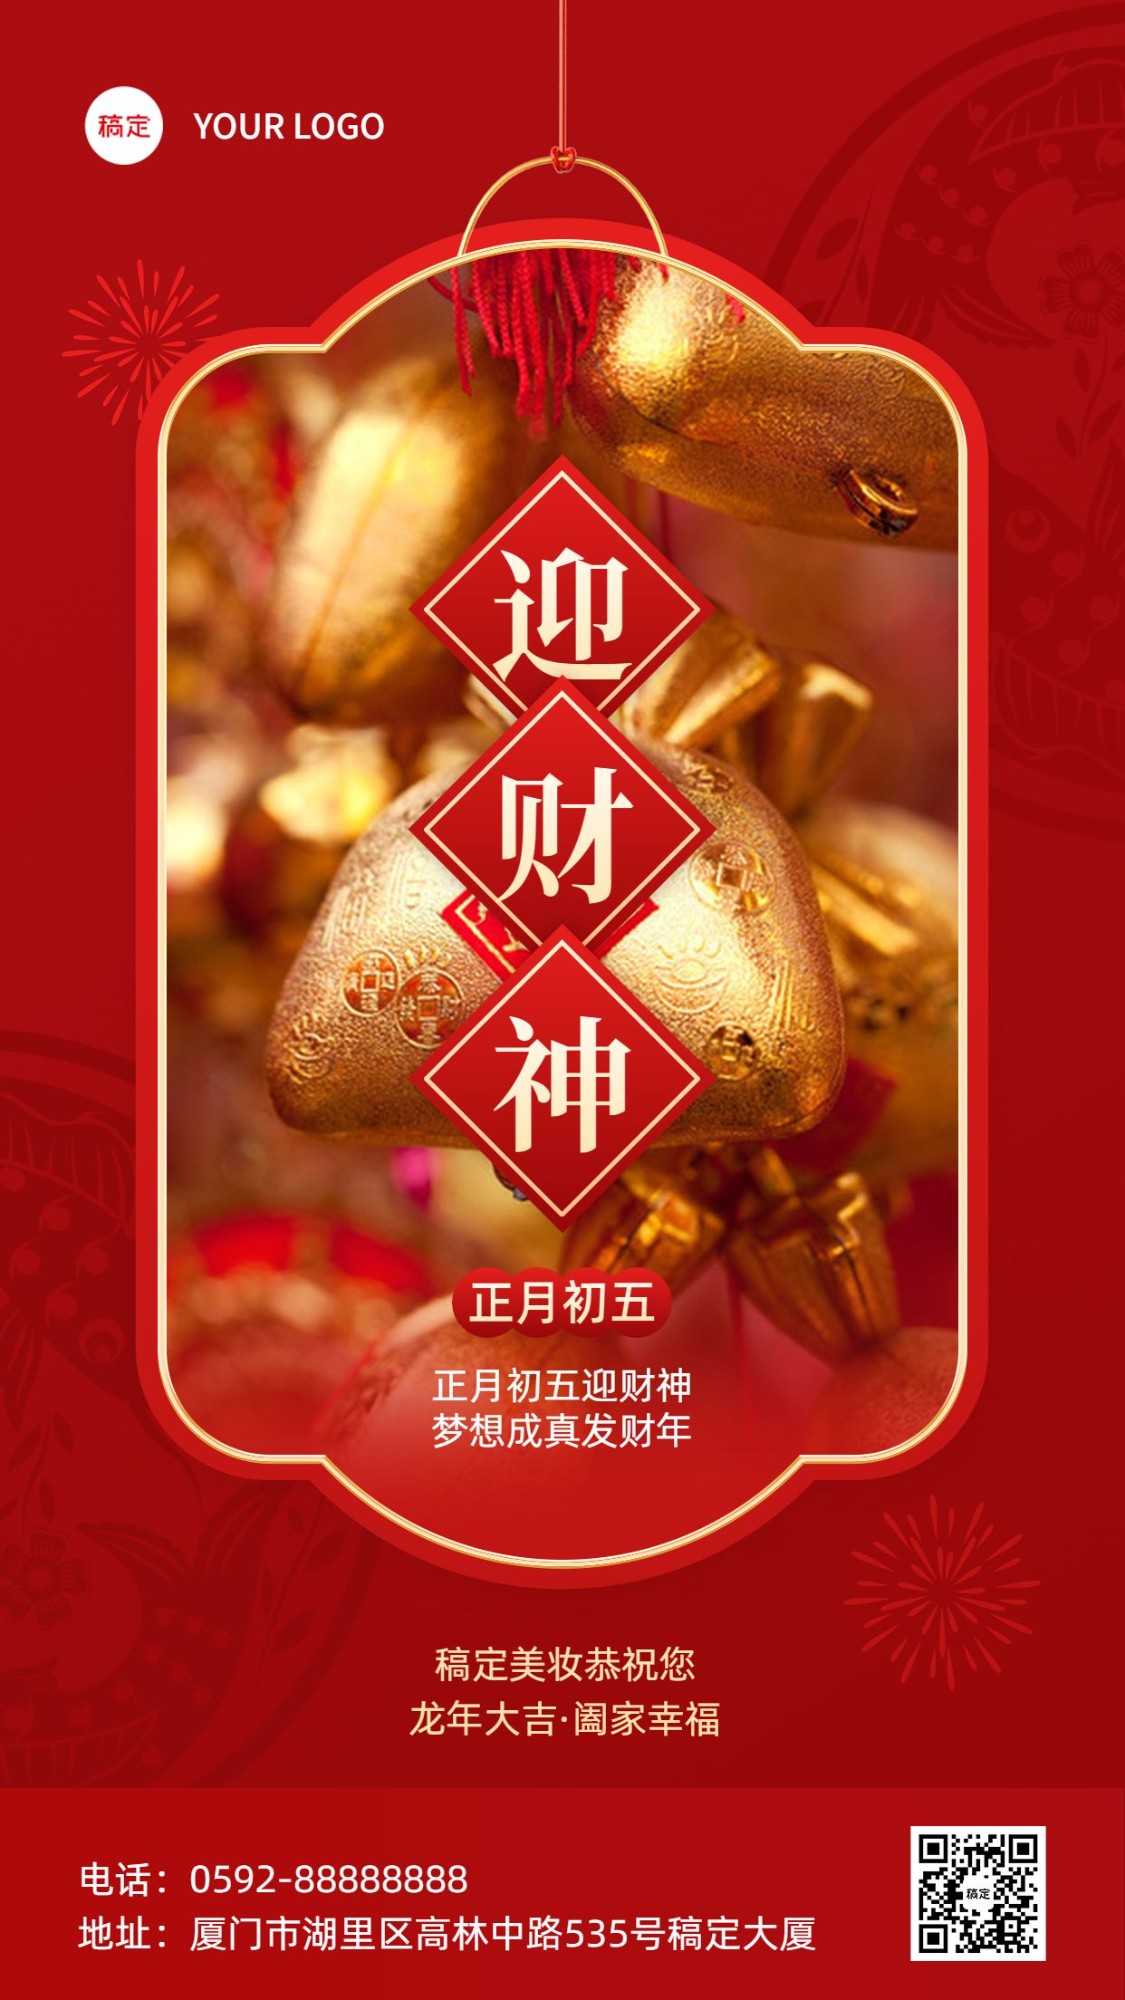 春节正月初五美容美妆迎财神节日祝福中式喜庆感套装竖版海报